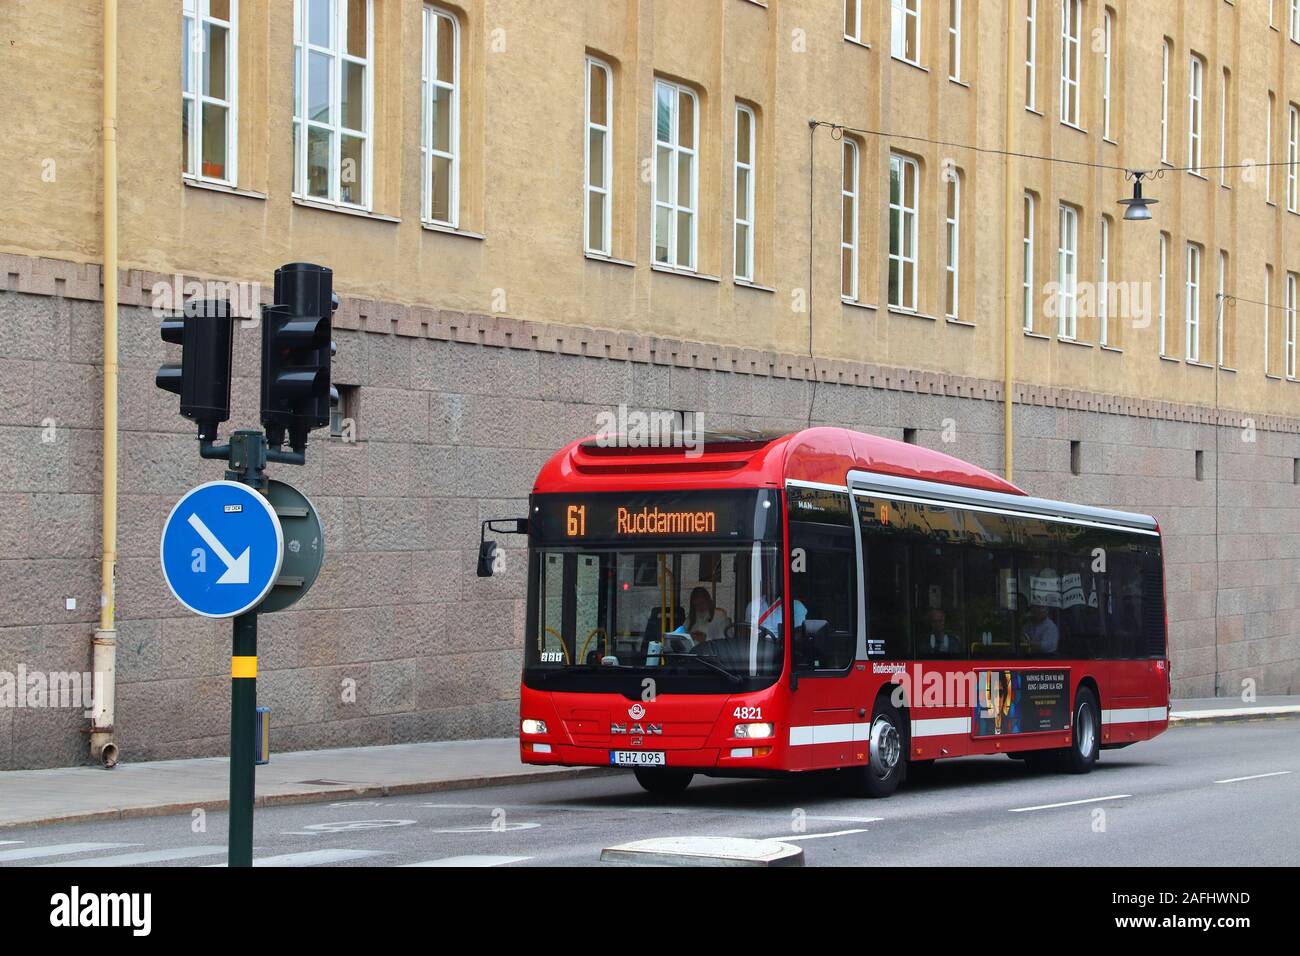 Stoccolma, Svezia - 24 agosto 2018: uomo di autobus della città di Stoccolma, Svezia. Gli autobus sono gestiti da SL, Storstockholms Lokaltrafik (Stoccolma Lo Foto Stock